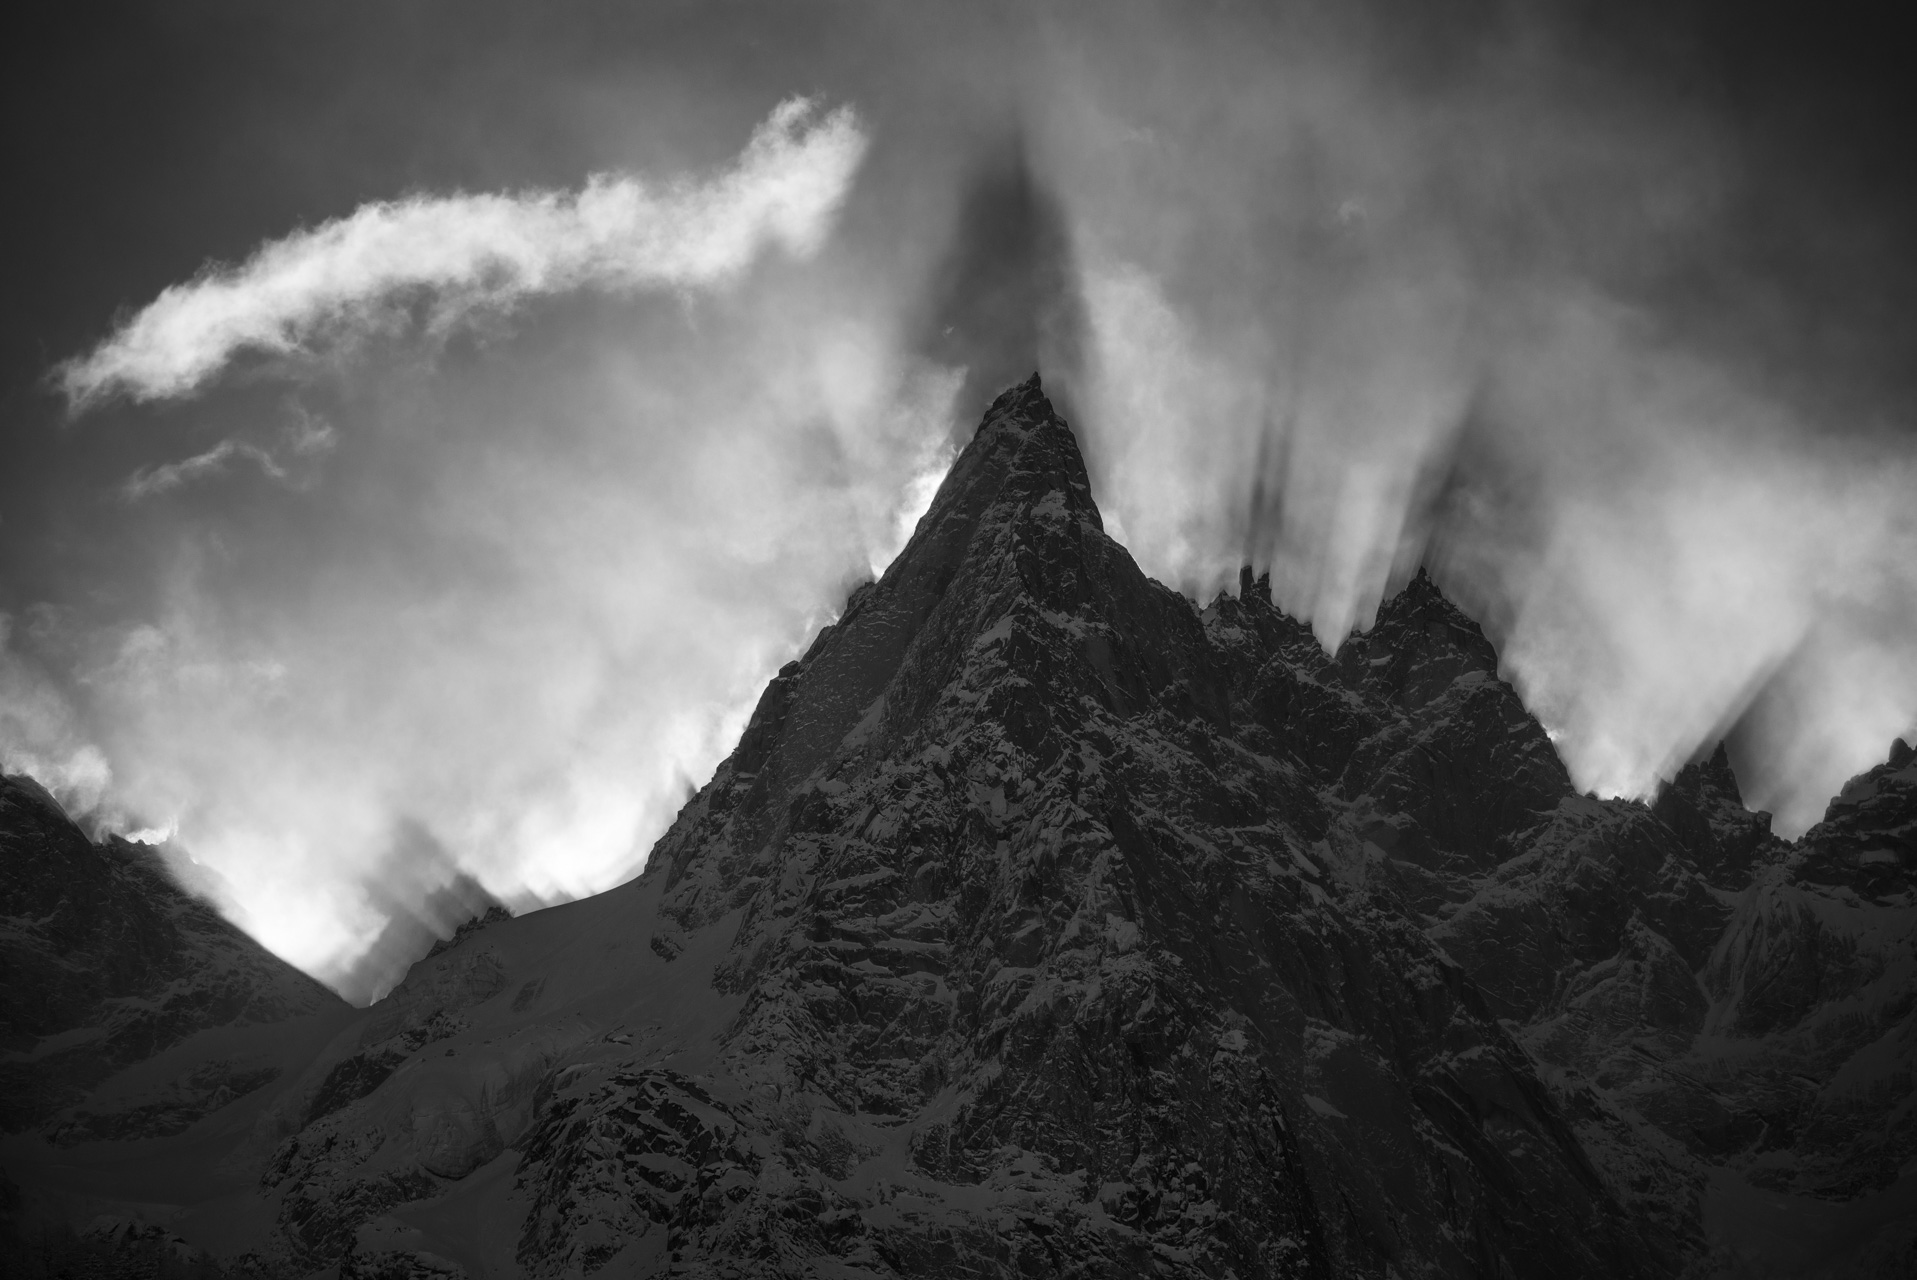 Aiguille du midi pictures - Aiguilles de Chamonix images - Mountain images - Aiguille de Blaitière - Aiguille des Ciseaux - Aiguille du Fou